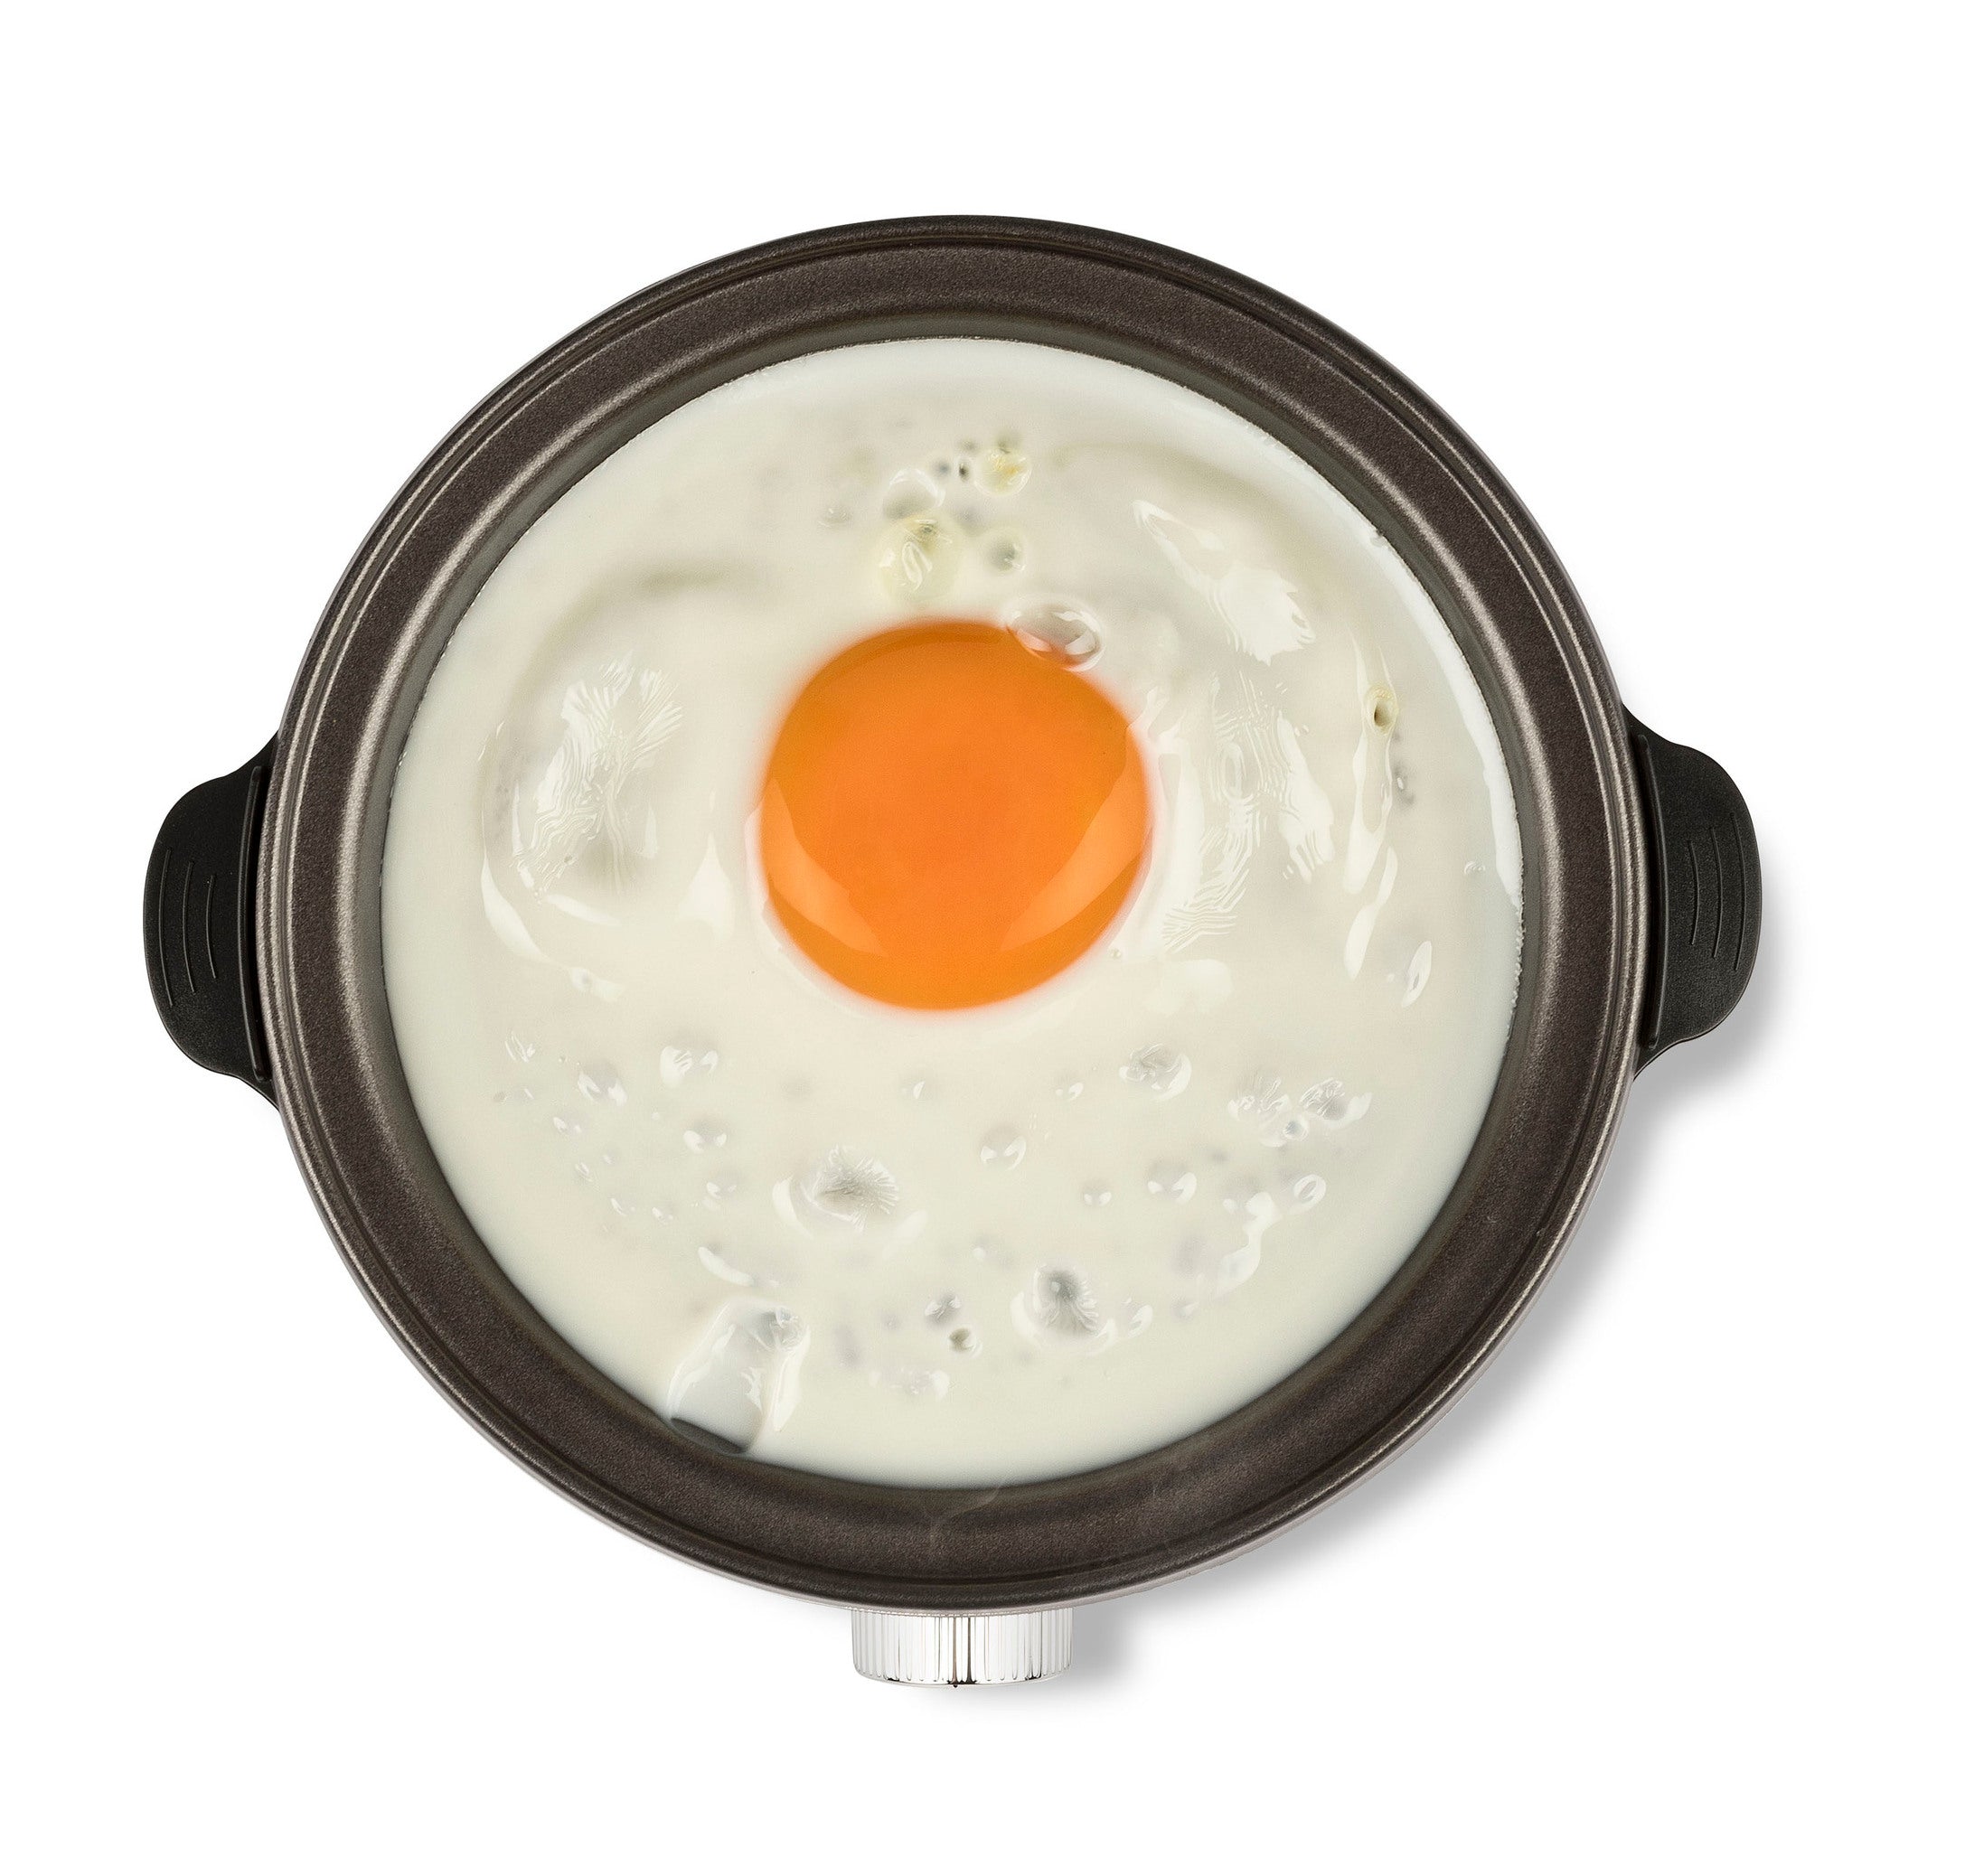 Girmi CU25 A tökéletes tojásfőző 7 tojás elkészítéséhez